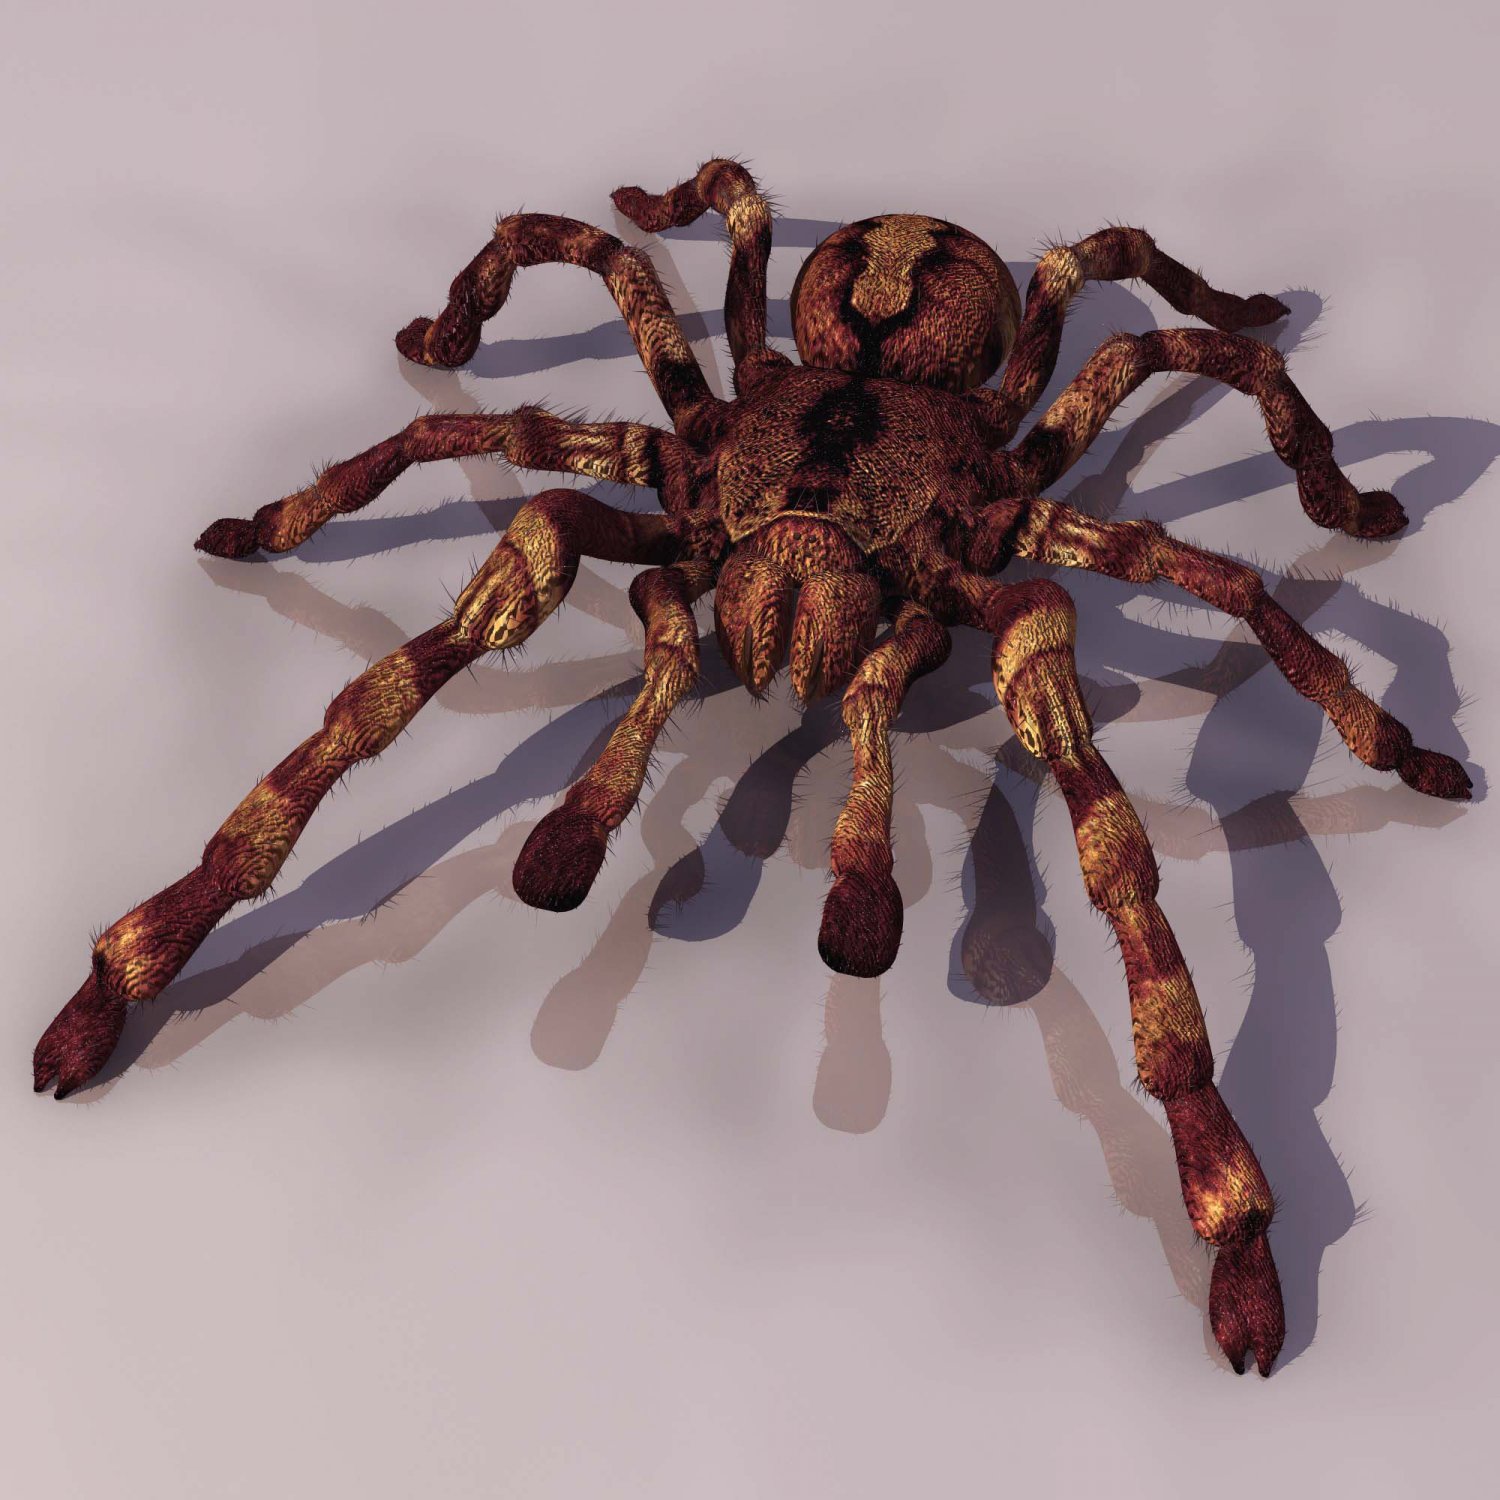 Spider Tarantula 3D model